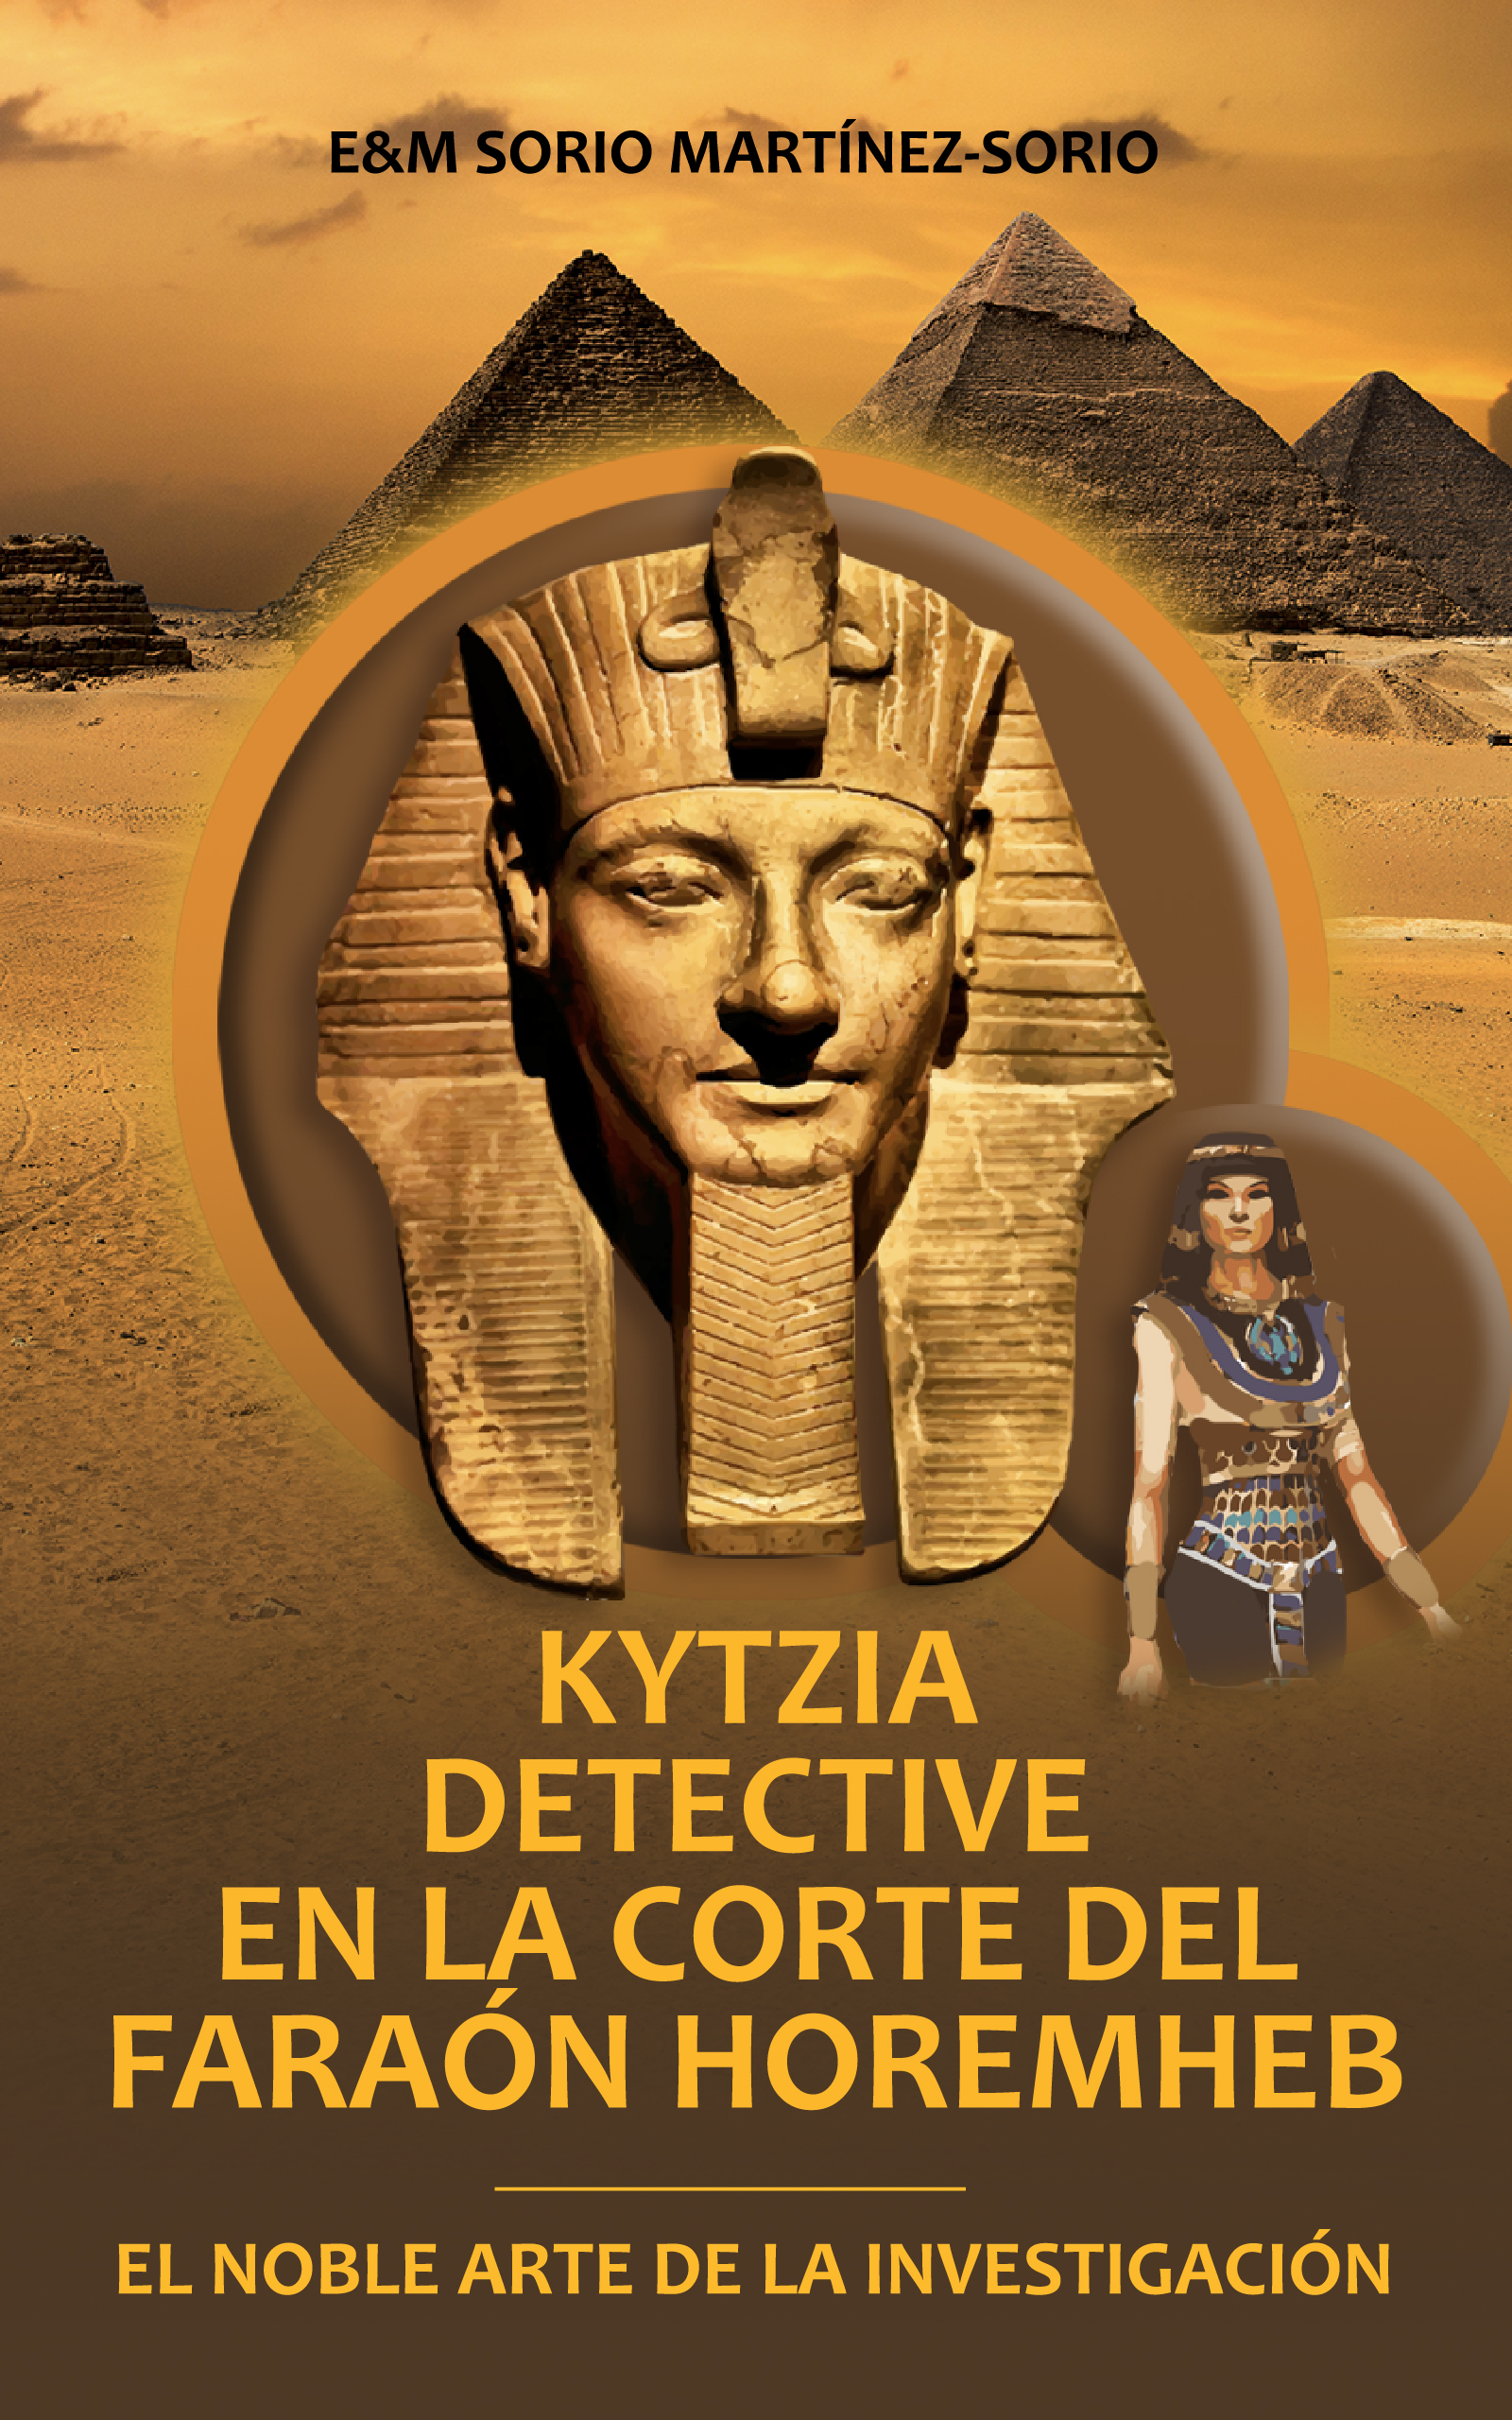 Kytzia detective en la corte del Faraón Horemheb, de E-M Sorio Martínez-Sorio